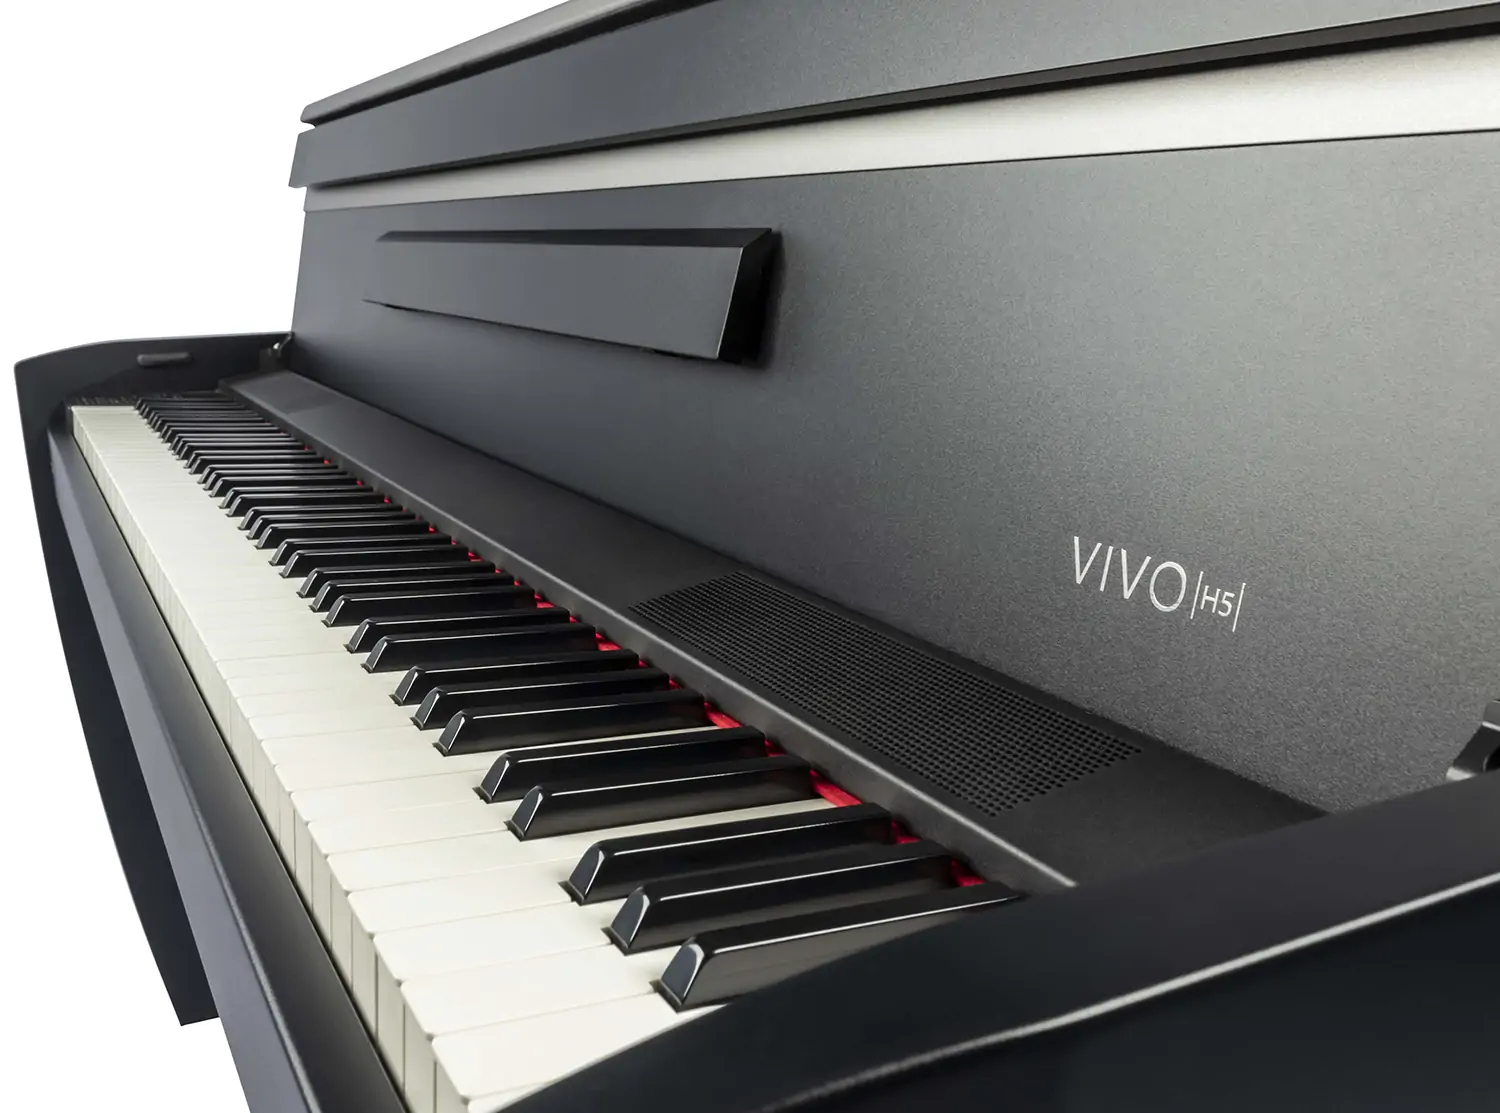 Dexibell Vivo H5 Bk - Piano digital con mueble - Variation 3